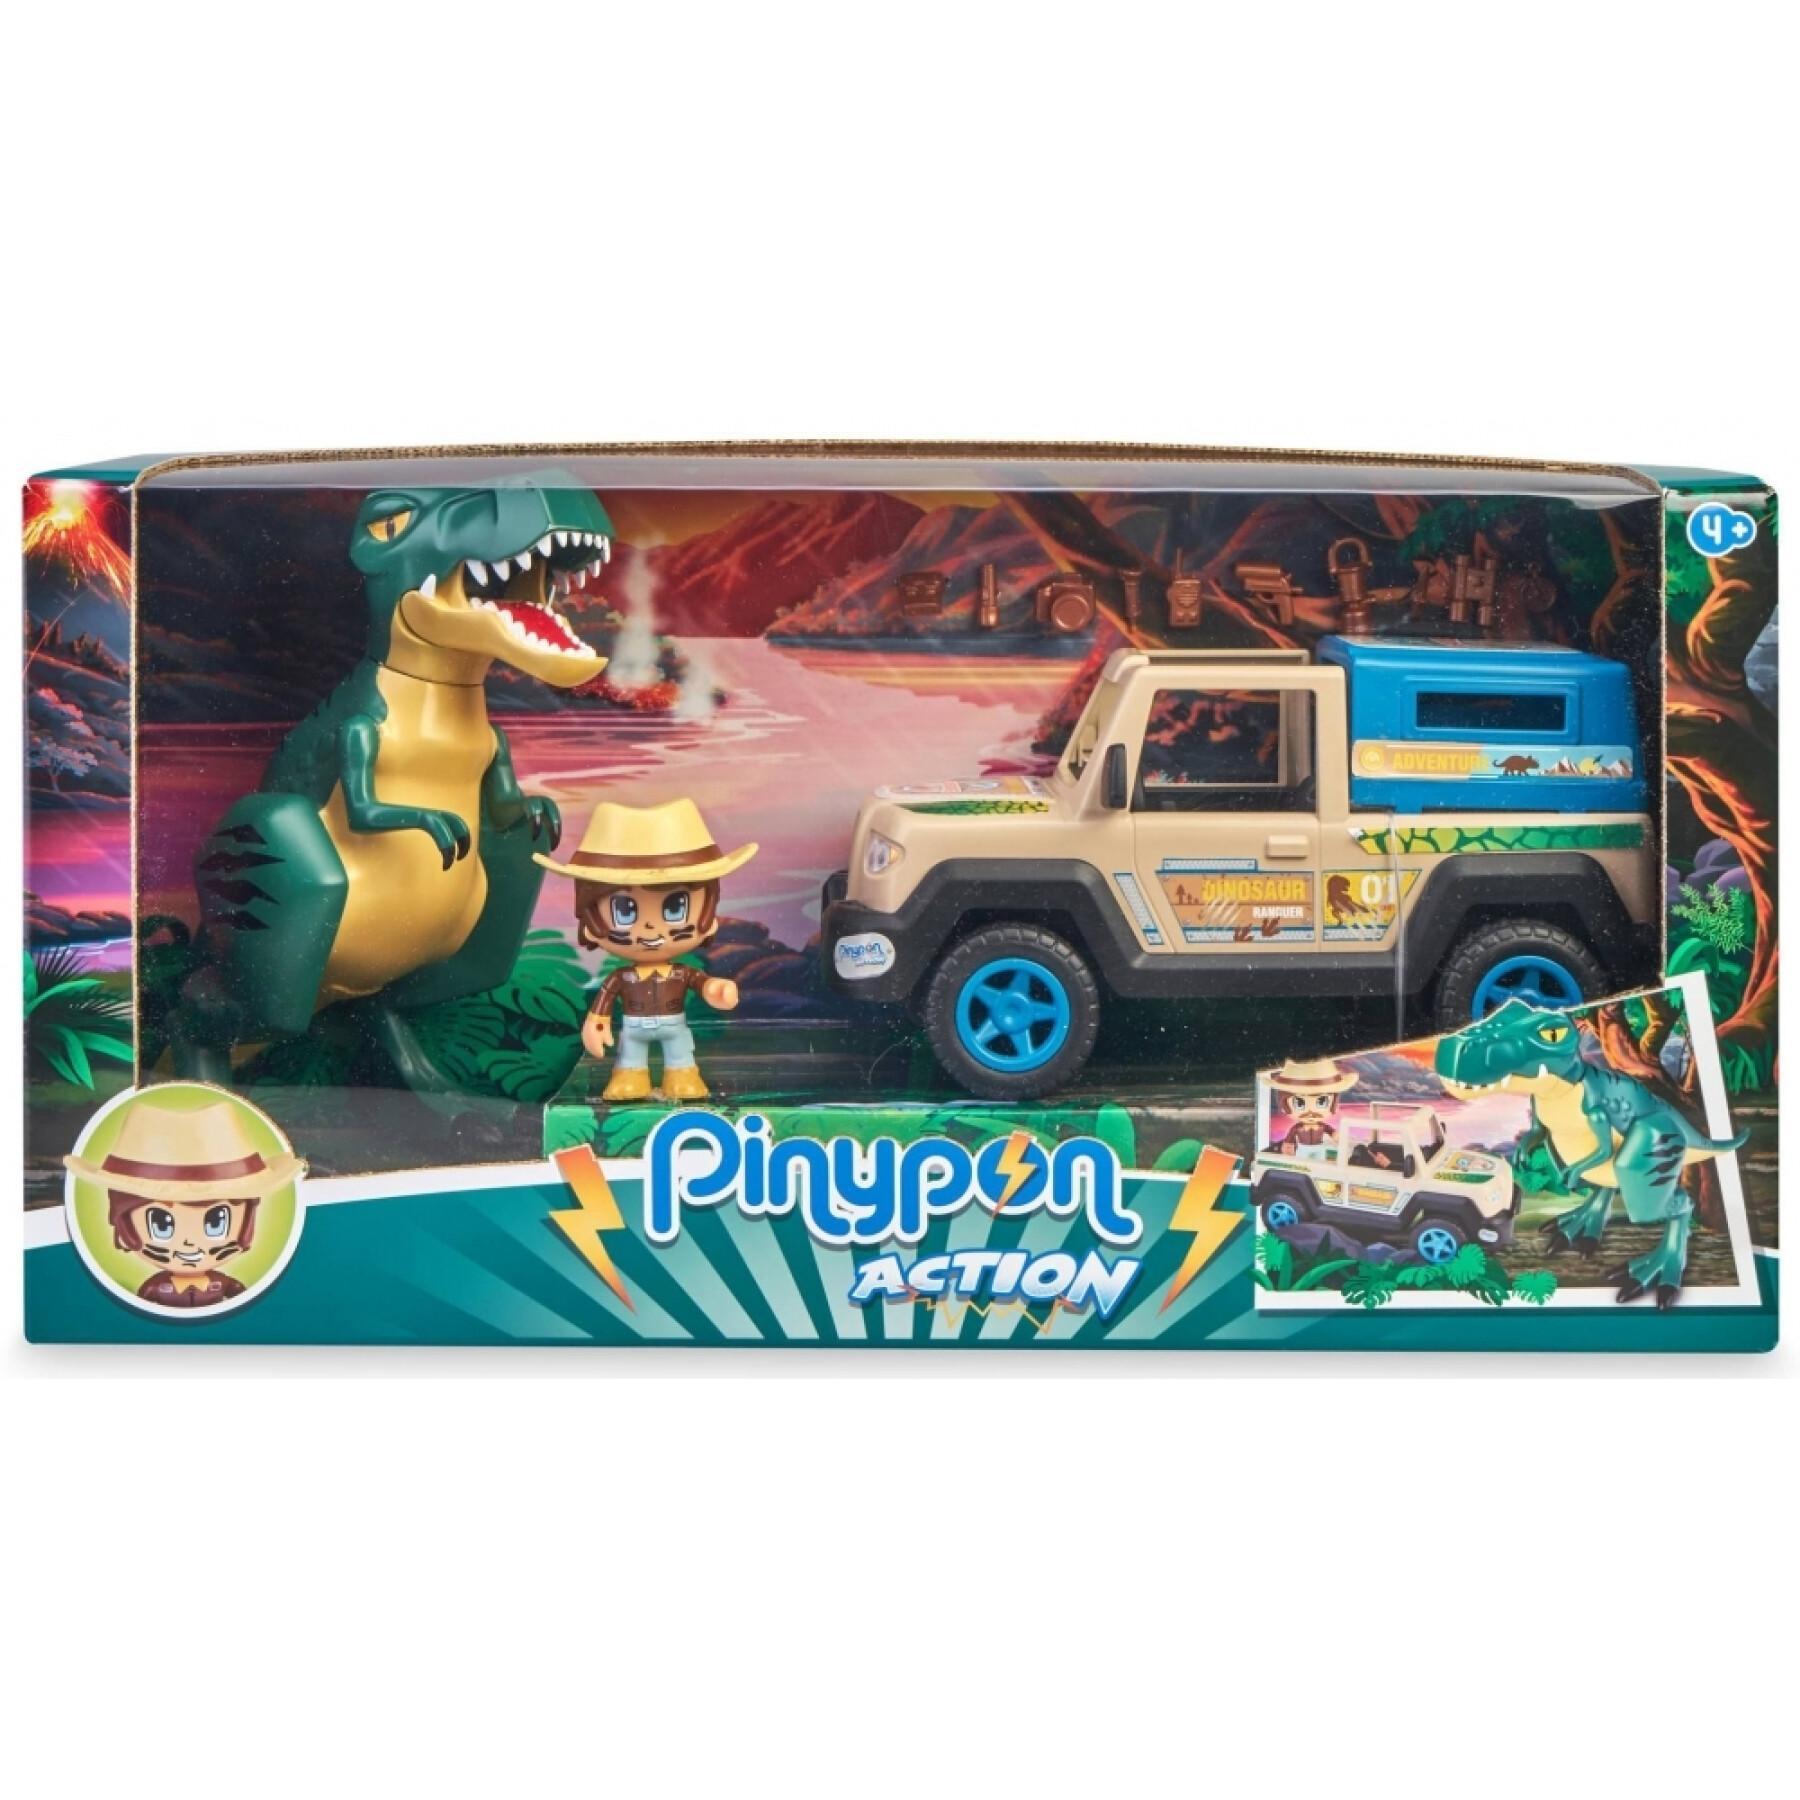 Figurka z samochodem i dinozaurem Famosa